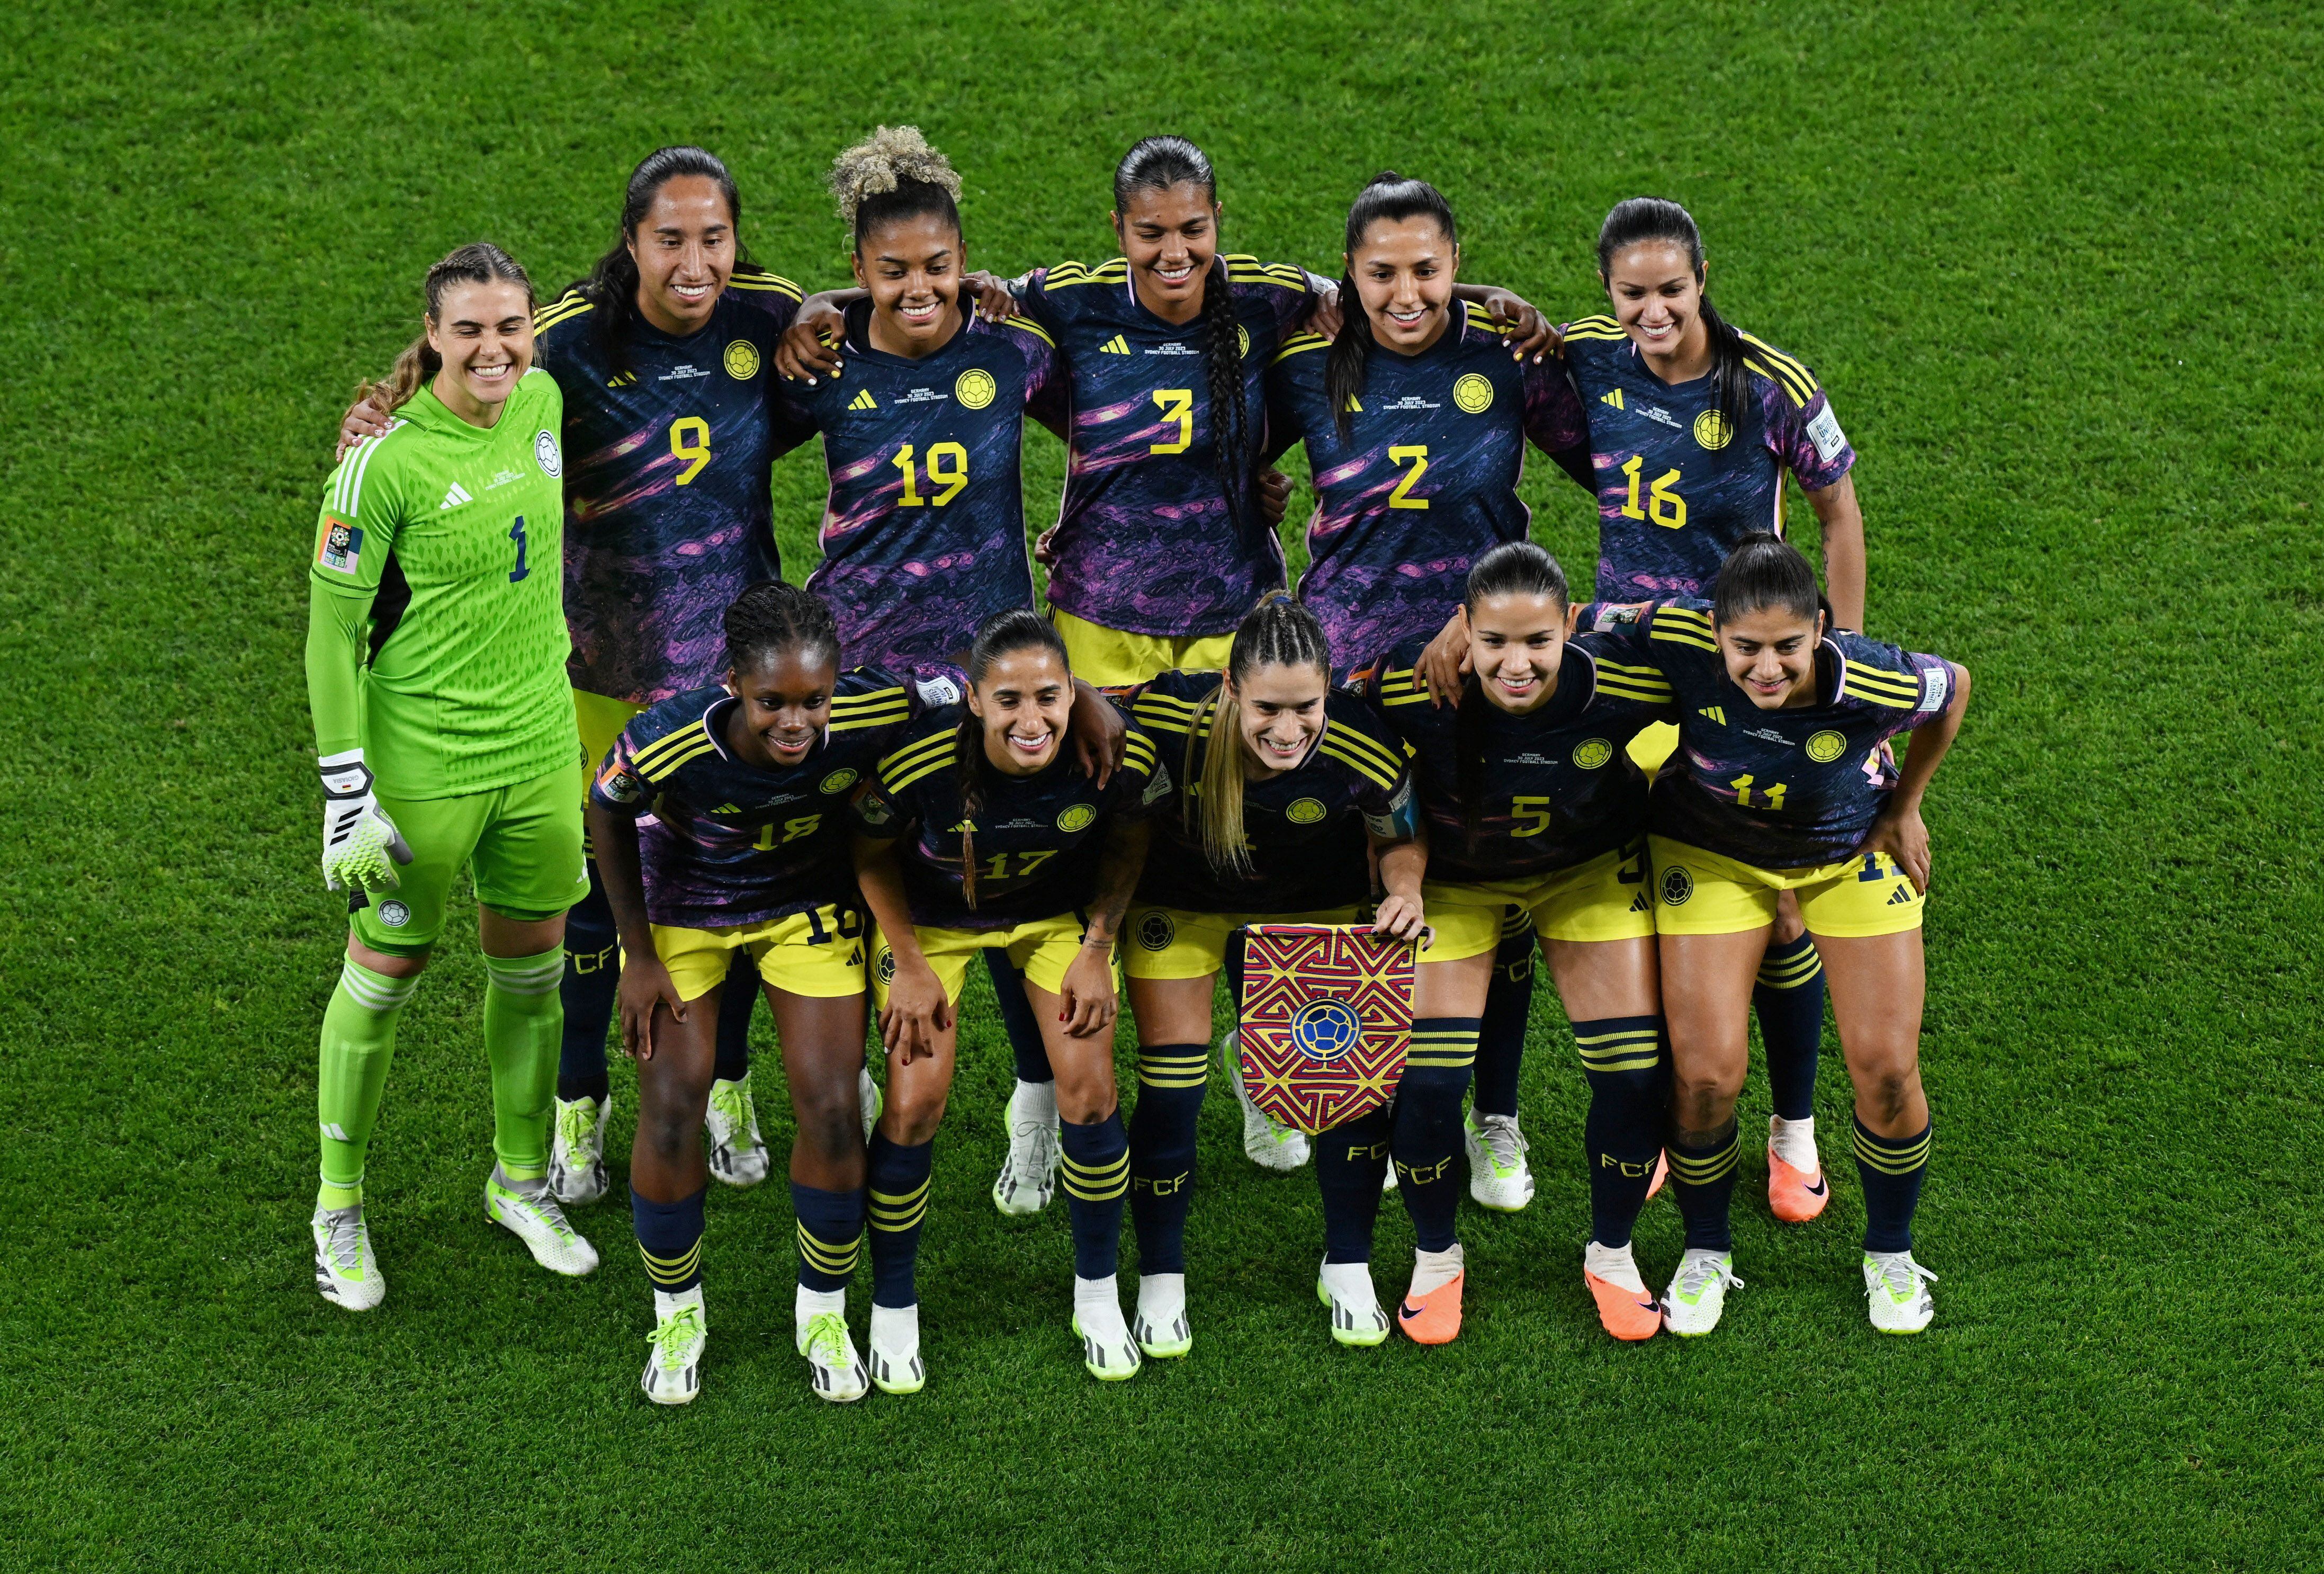 La selección Colombia mantiene puntaje perfecto en la Copa Mundial Femenina de la FIFA tras dos victorias en dos partidos jugados. Foto: REUTERS/Jaimi Joy